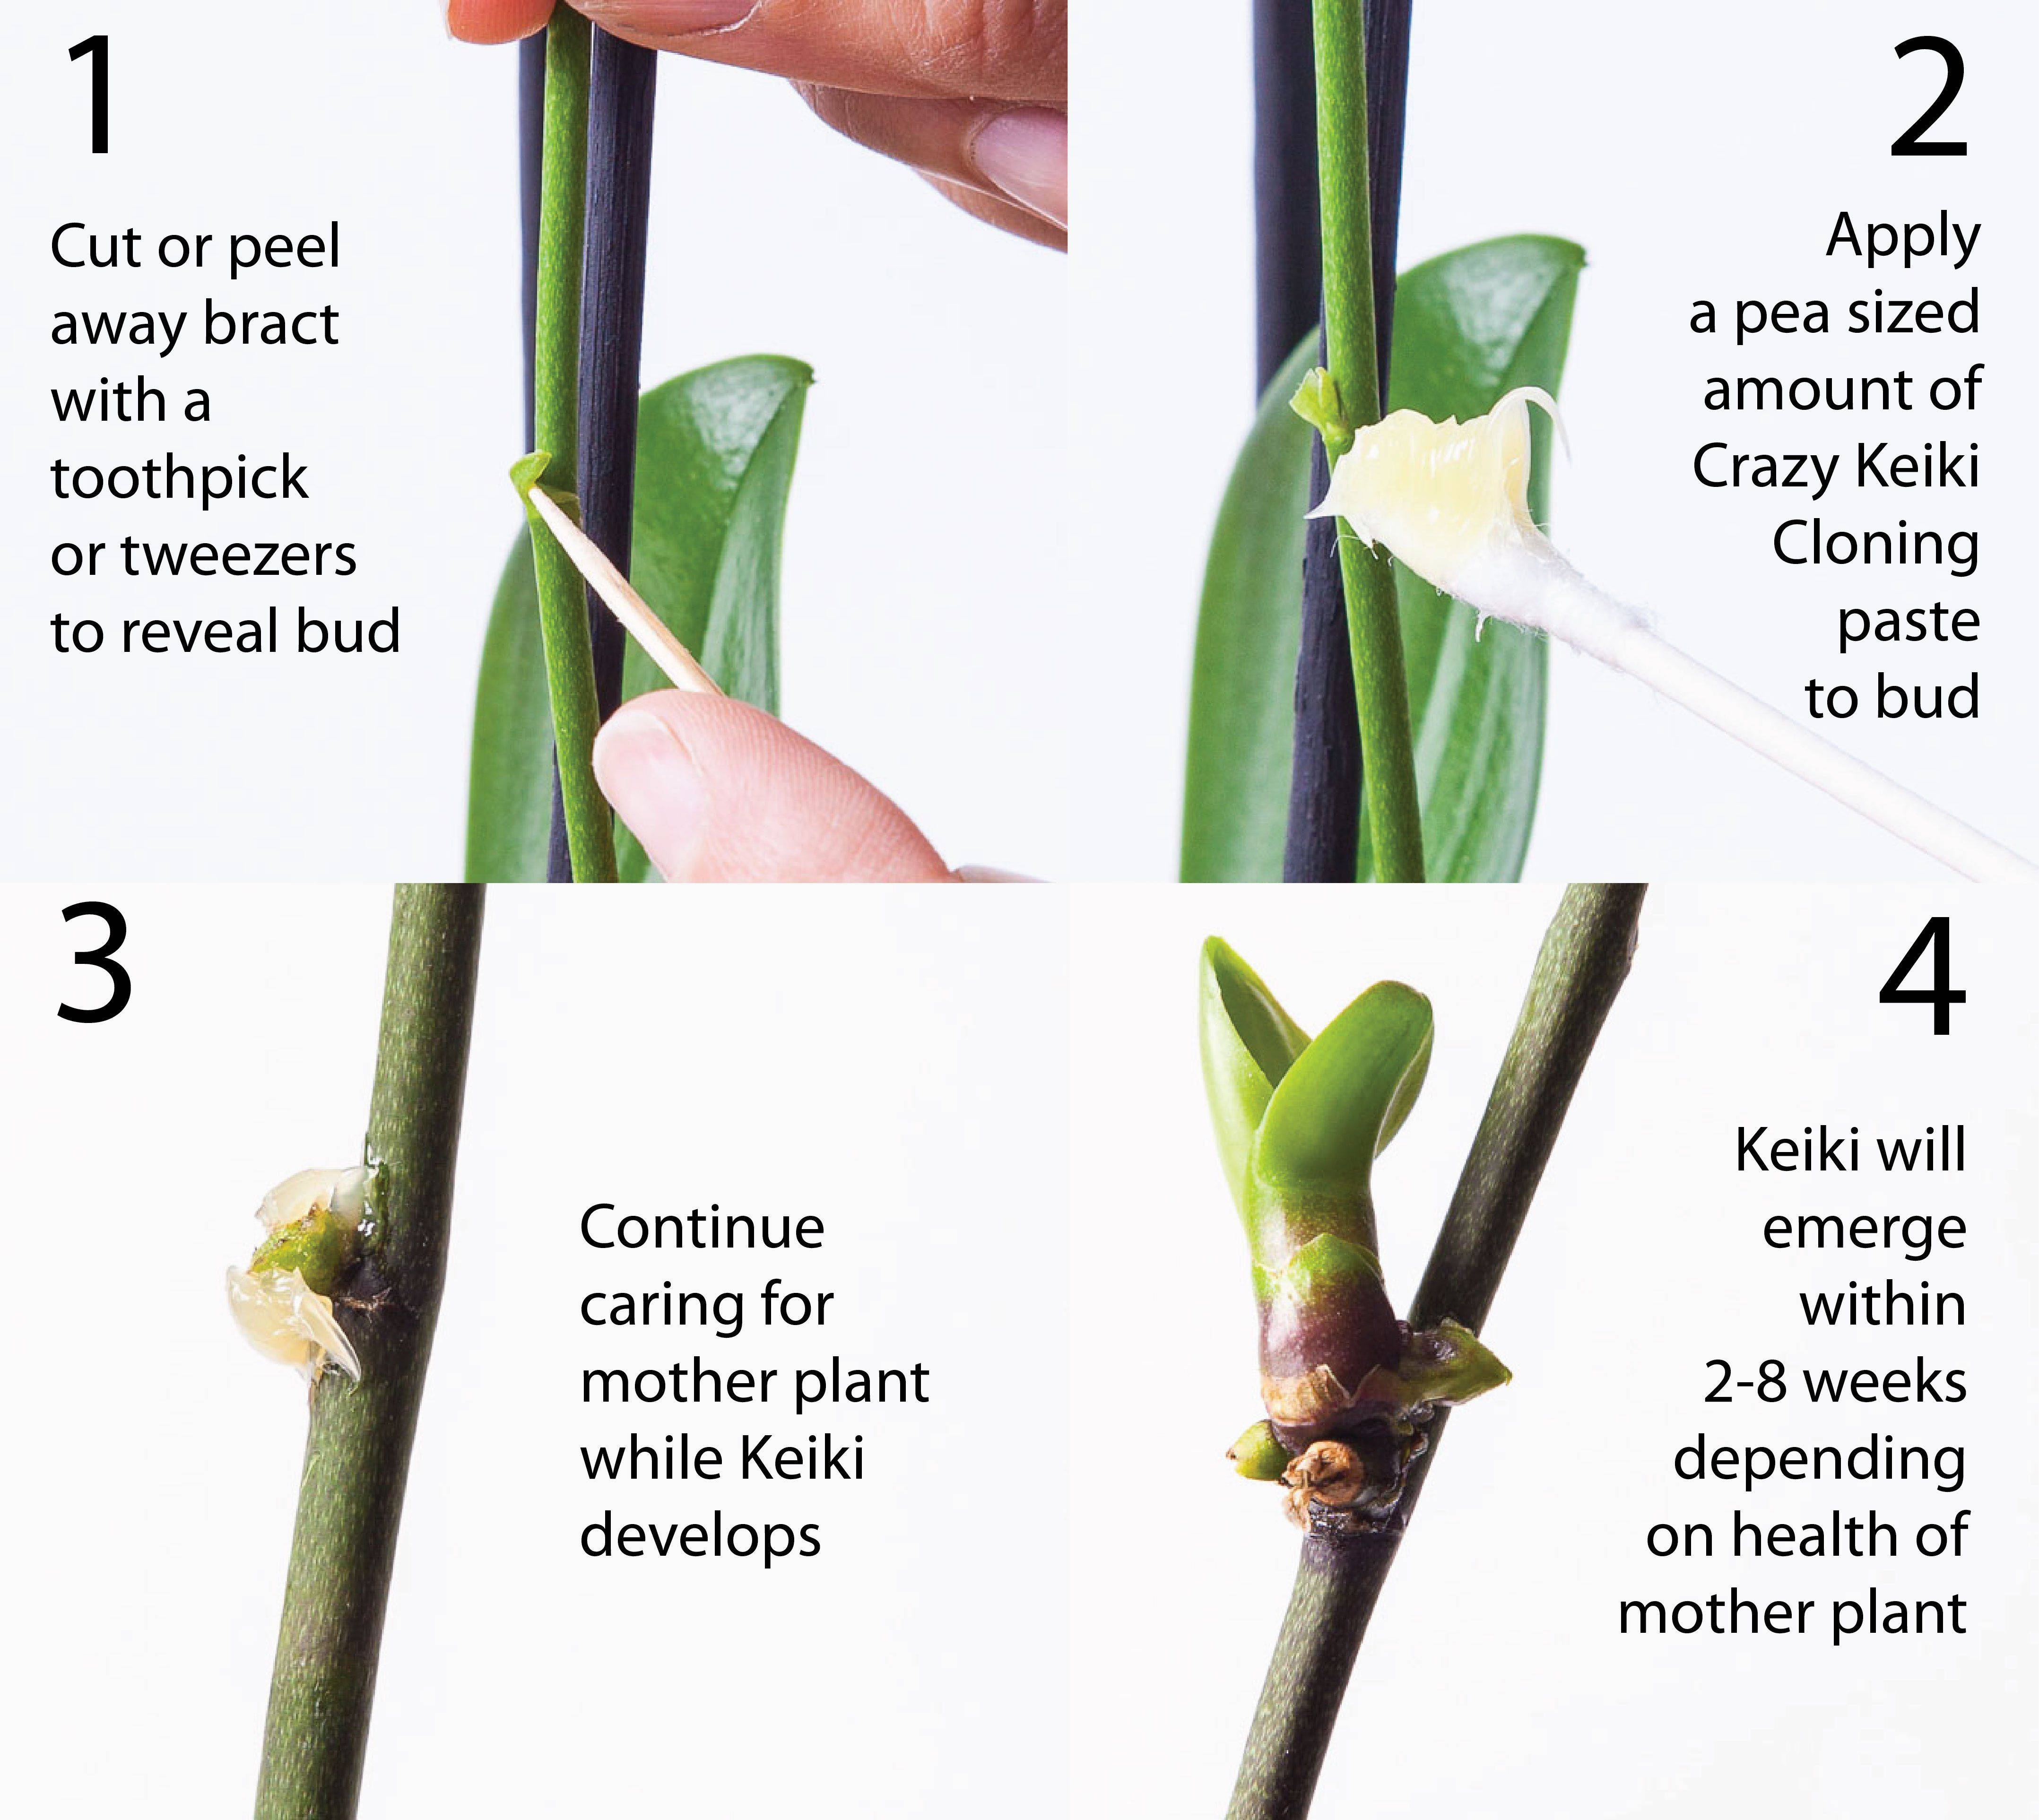 Как применять цитокининовую пасту для орхидей